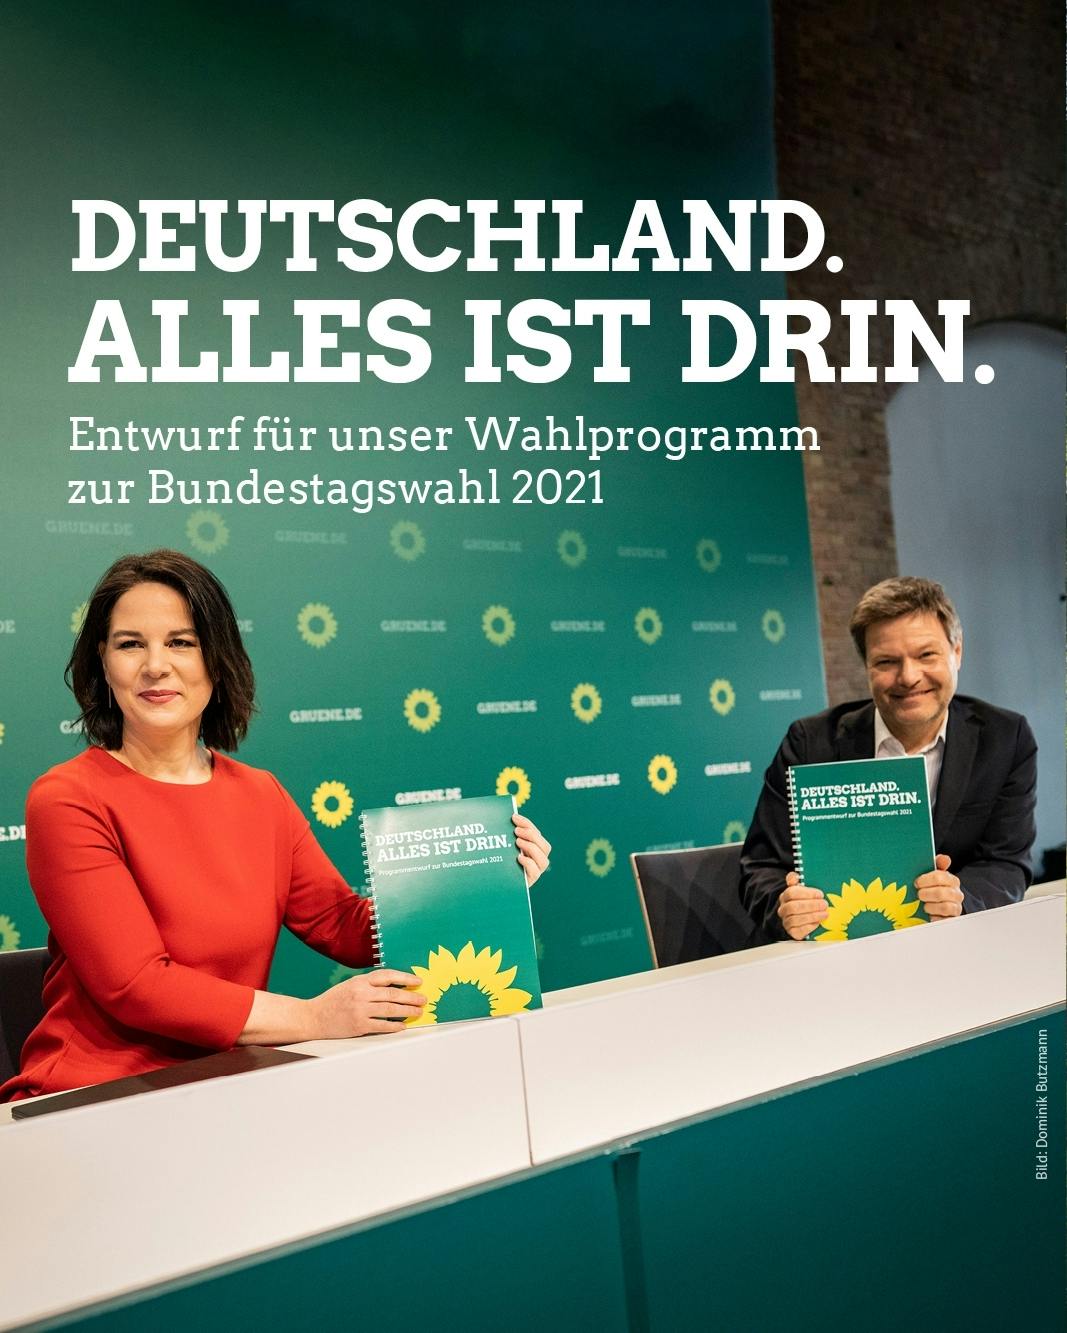 Annalena Baerbock und Robert Habeck halten den Wahlprogrammentwuf für die Bundestagswahl hoch. Schirftzug: "Deutschland. Alles ist drin".